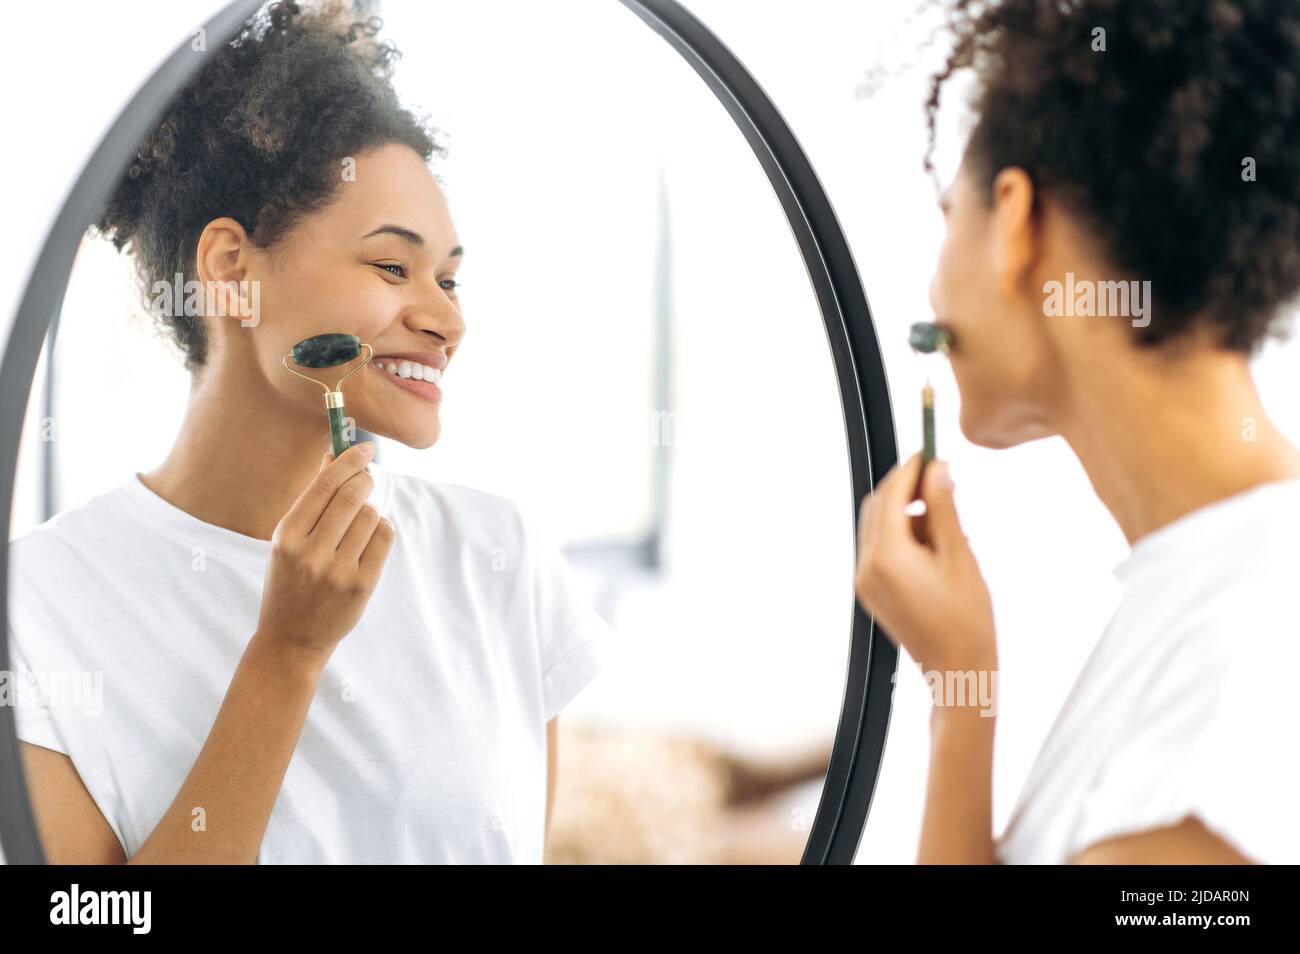 Soin du visage, prévention des rides. Belle jeune femme afro-américaine aux cheveux bouclés, faisant des procédures de soin de la peau du visage, debout devant un miroir à la maison, en utilisant un rouleau de jade, souriant heureux Banque D'Images